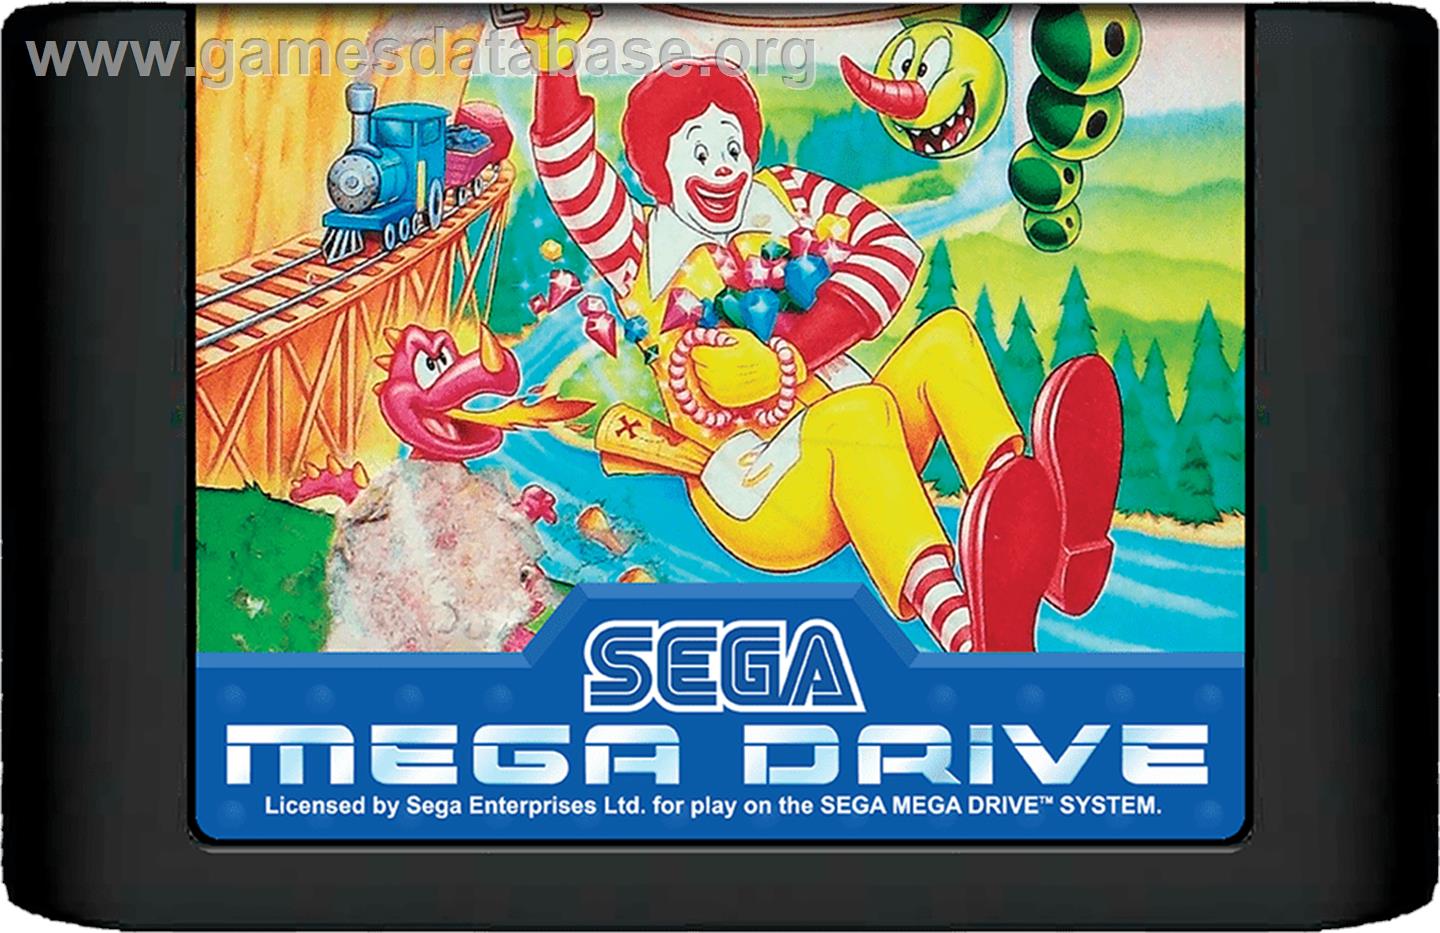 McDonald's Treasure Land Adventure - Sega Genesis - Artwork - Cartridge